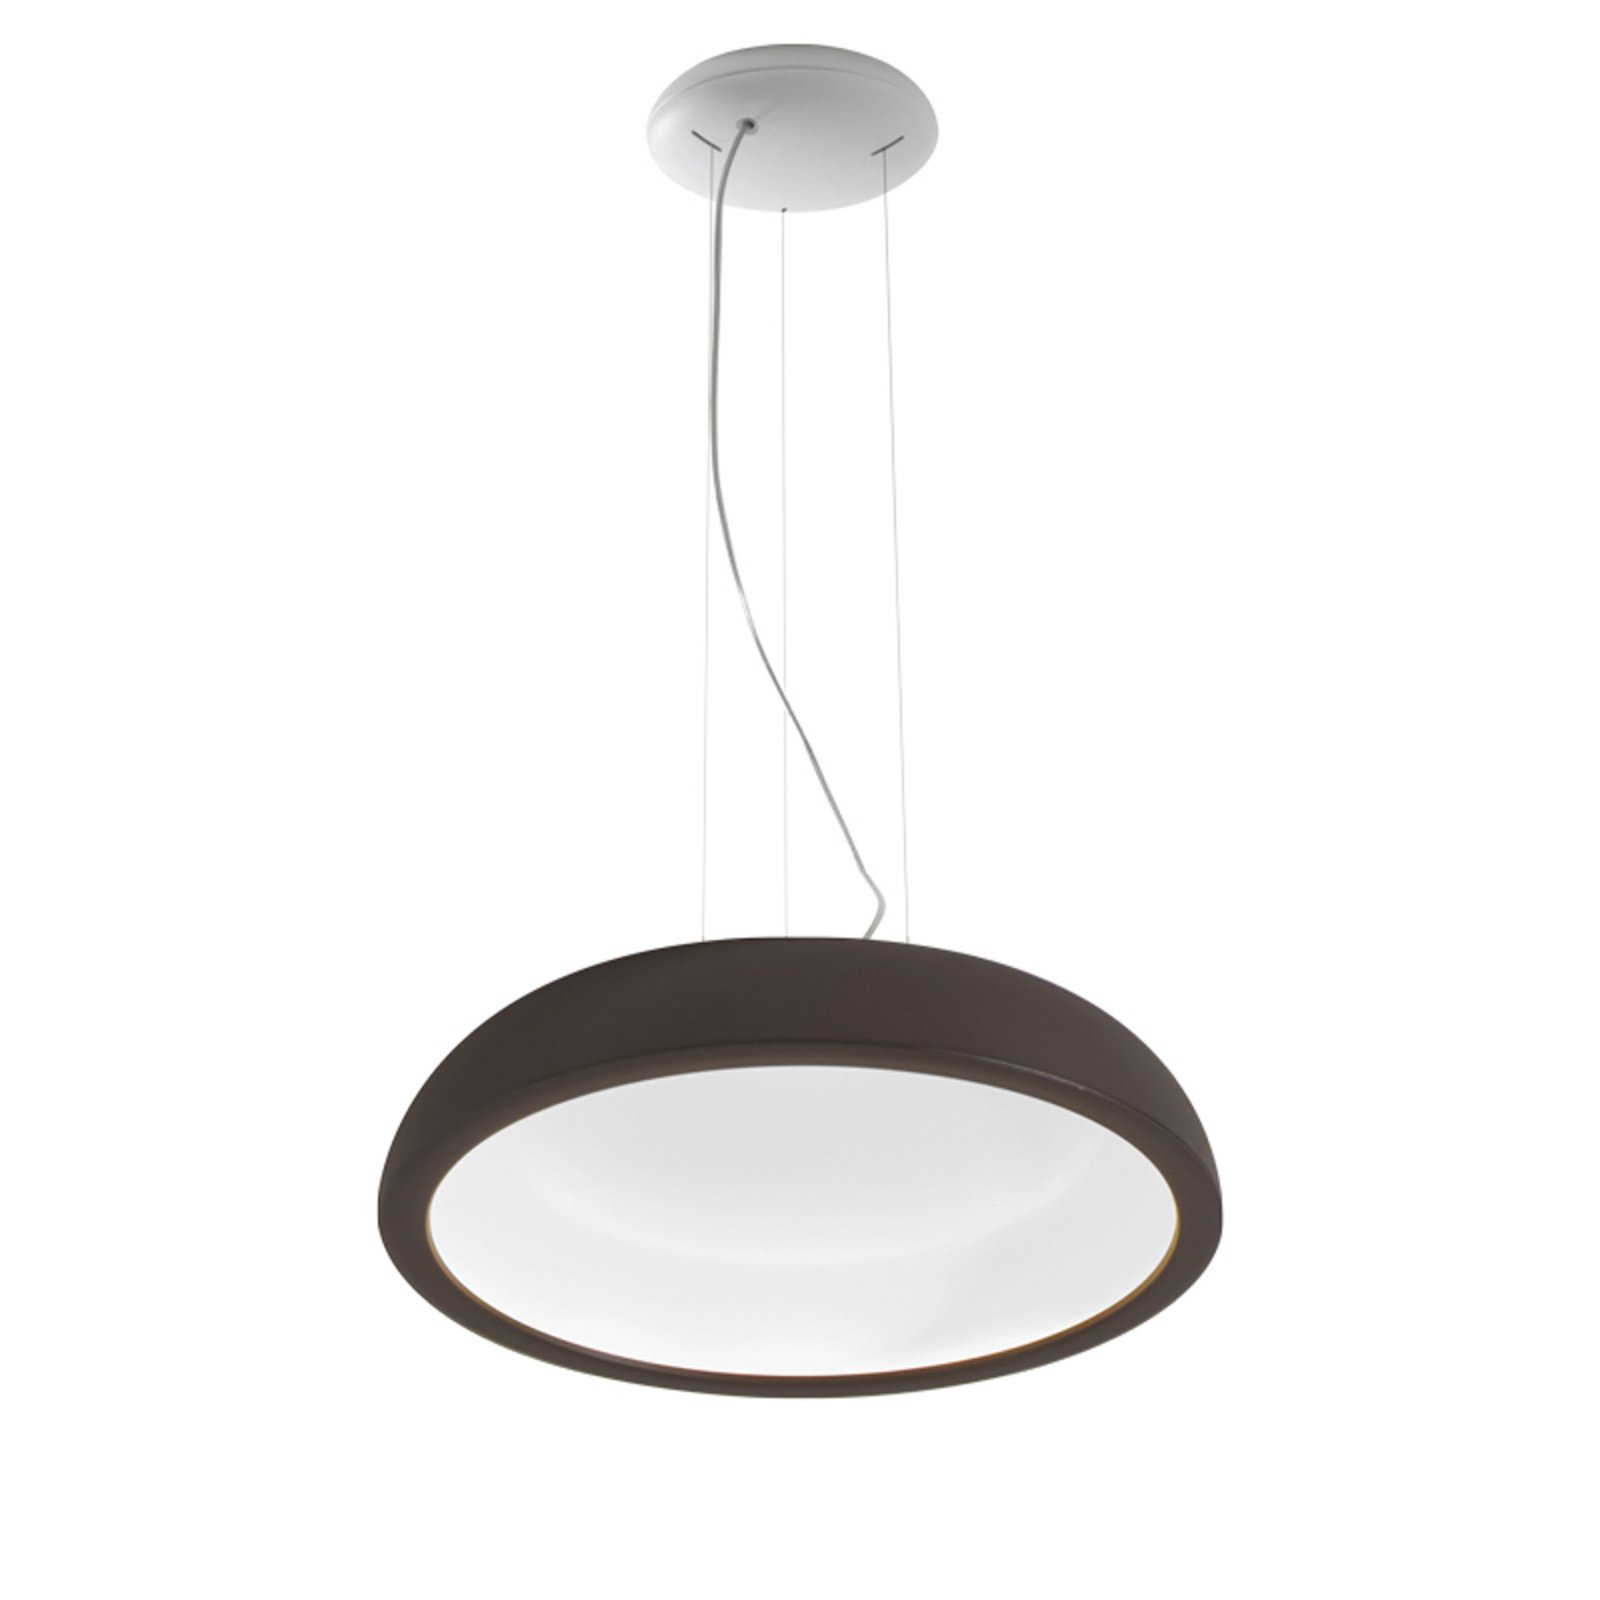 Stilnovo Reflexio LED hanglamp, Ø46cm, bruin